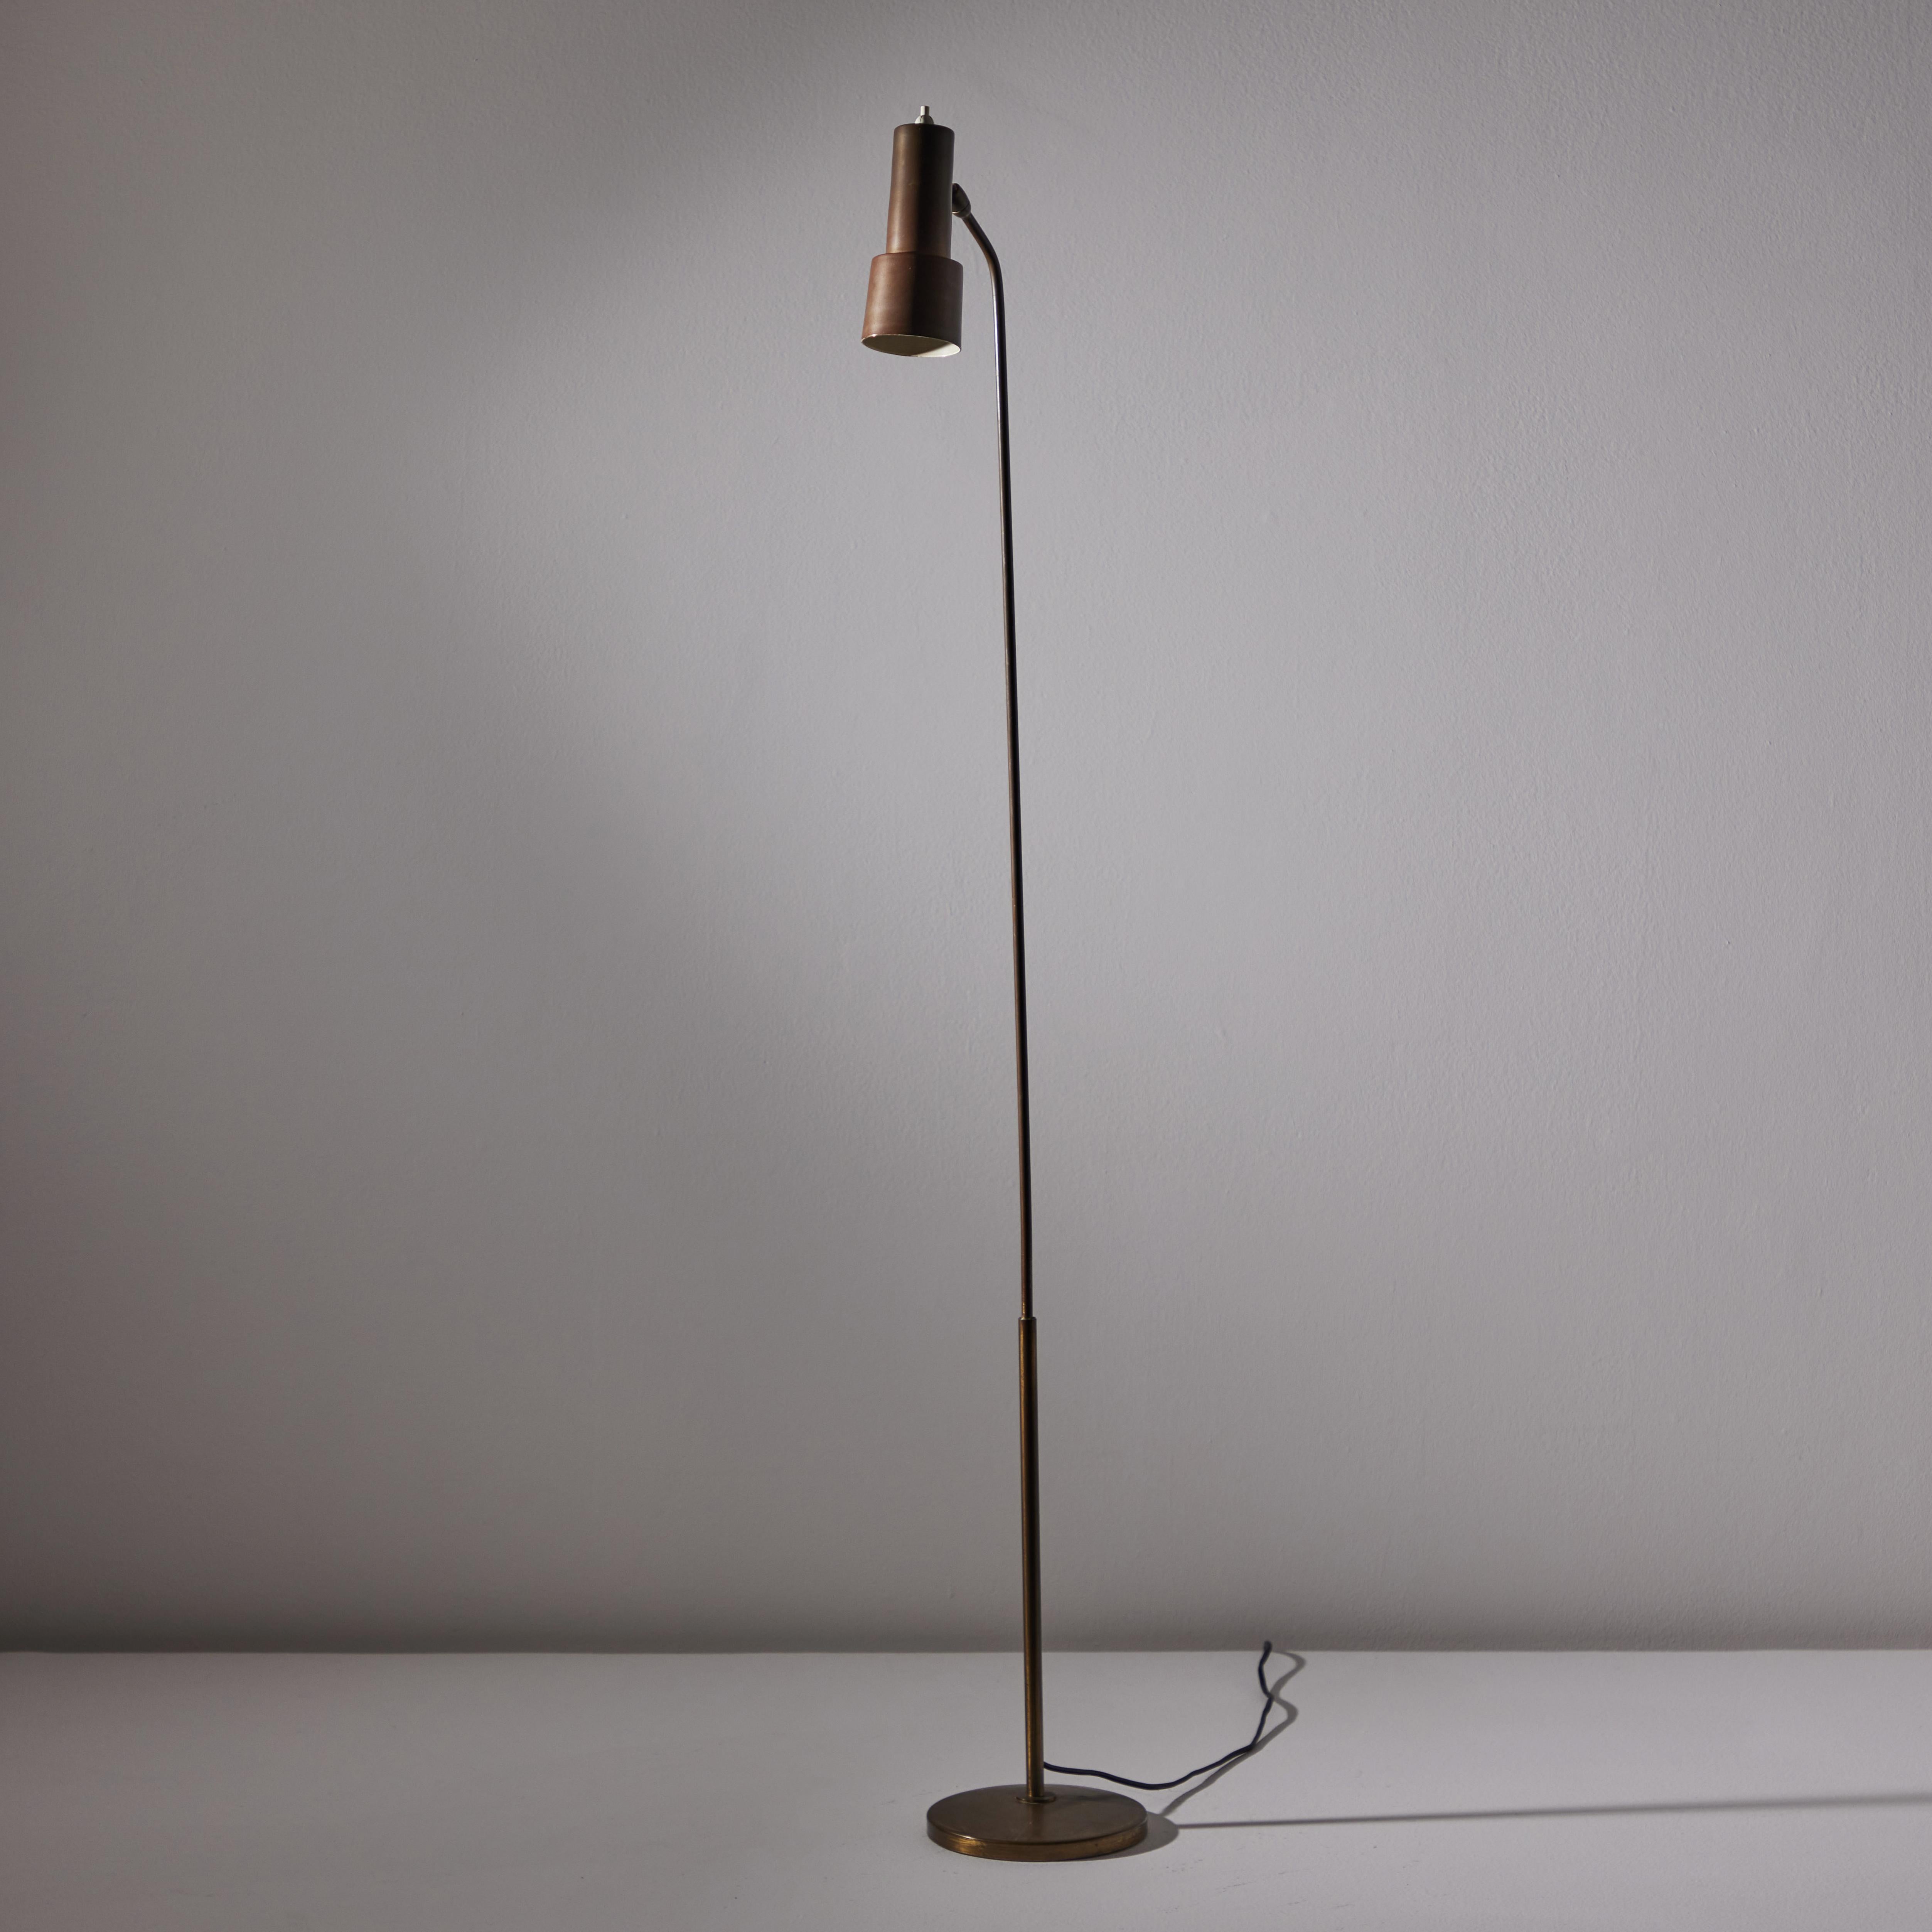 Italian Model 1968 Floor Lamp by Fontana Arte For Sale